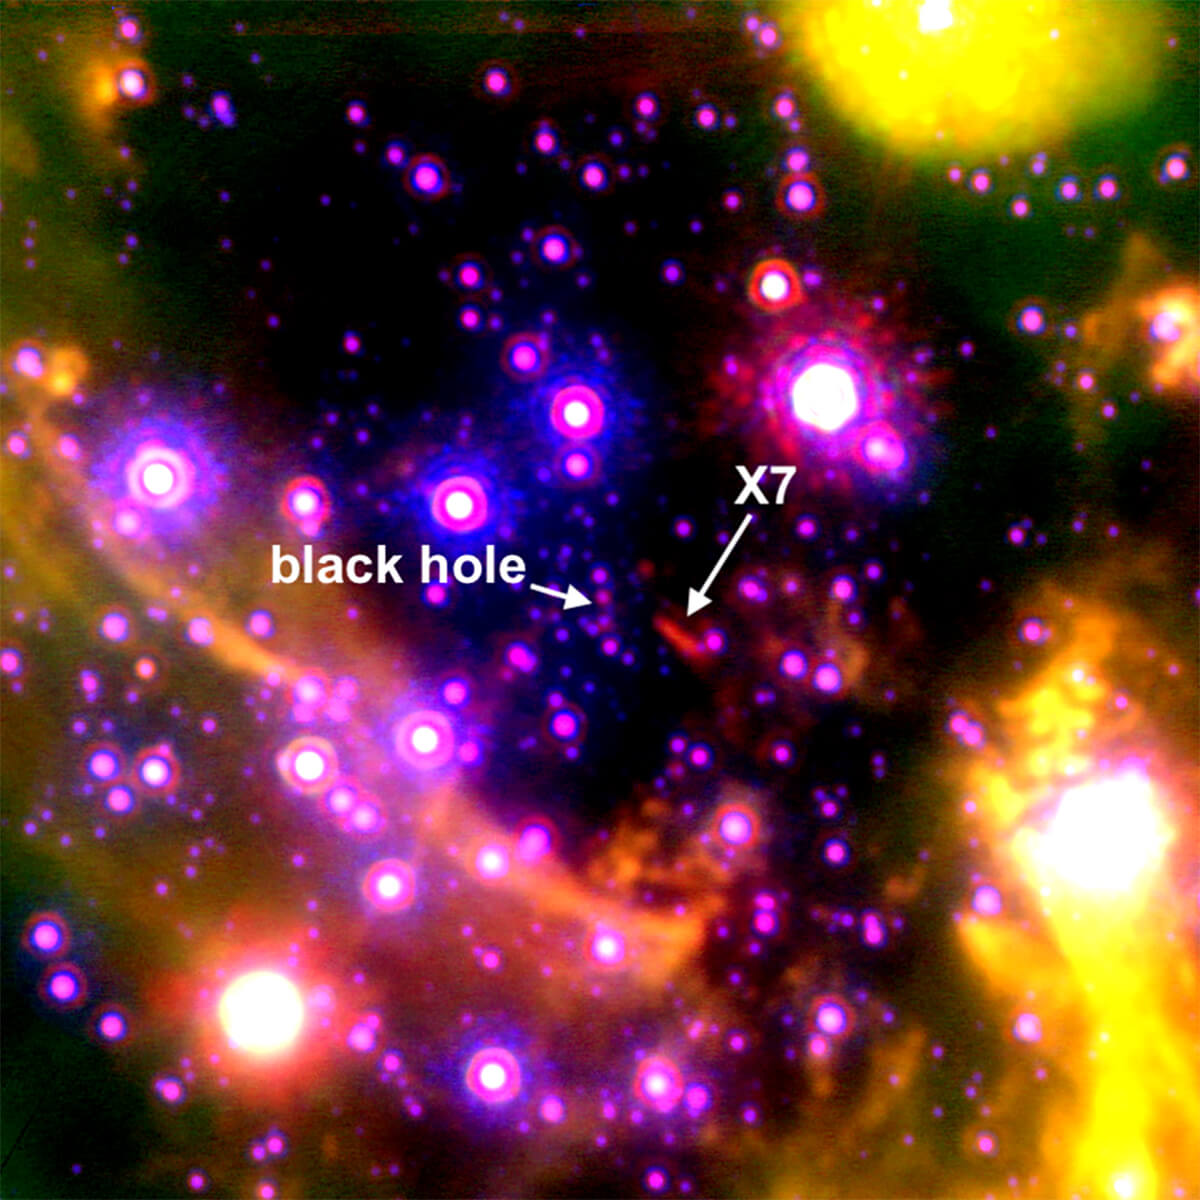 【▲ 図1: 天の川銀河中心部の画像。超大質量ブラックホール「いて座A*」のすぐ近くにある数多くの天体の中でも、X7は特徴的な細長い形をしている。 (Image Credit: Anna Ciurlo/UCLA) 】